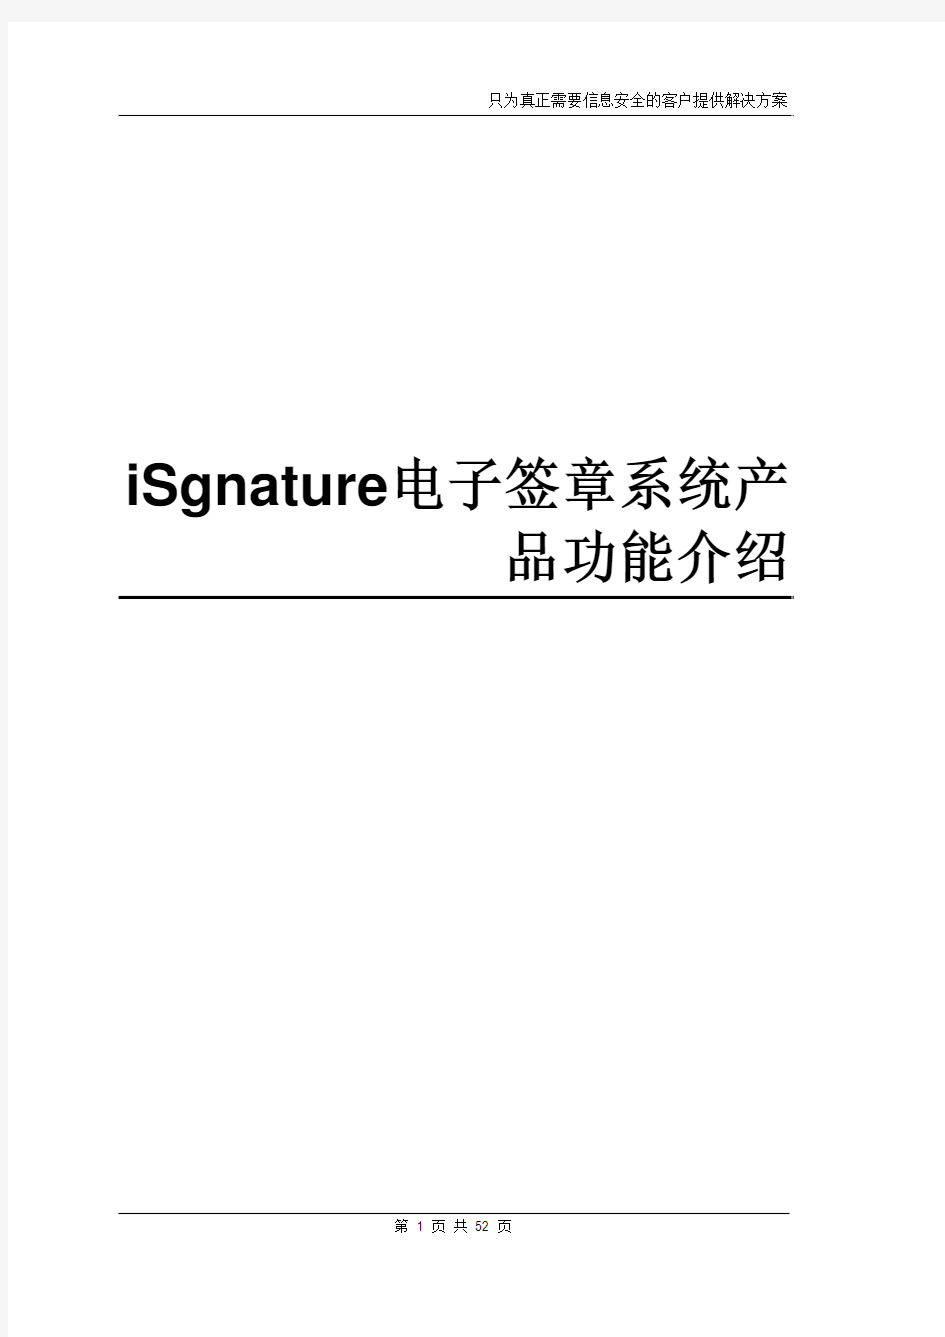 电子签章系统产品功能介绍【定稿】V8.1